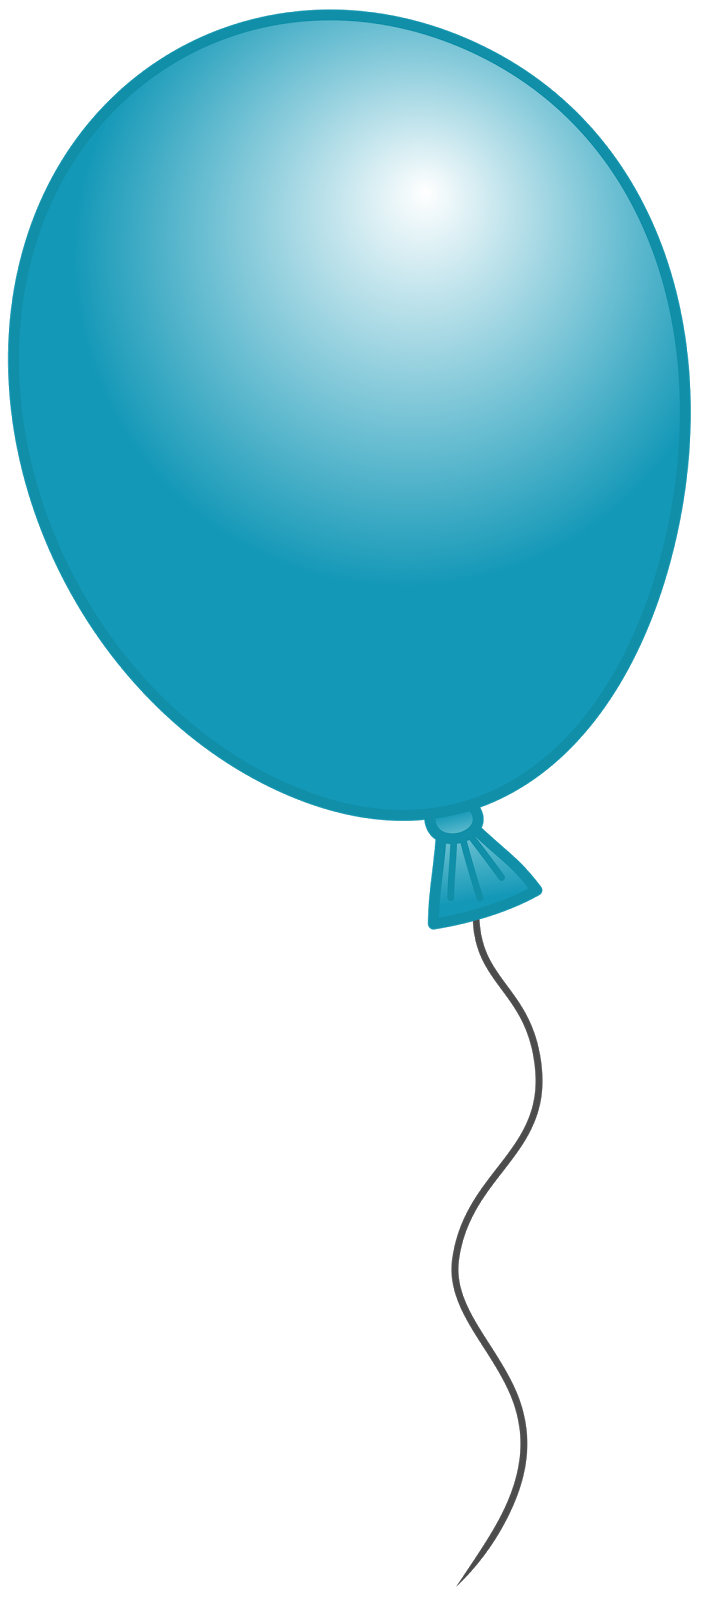 Ballon clipart balloon clipar - Free Clipart Balloons